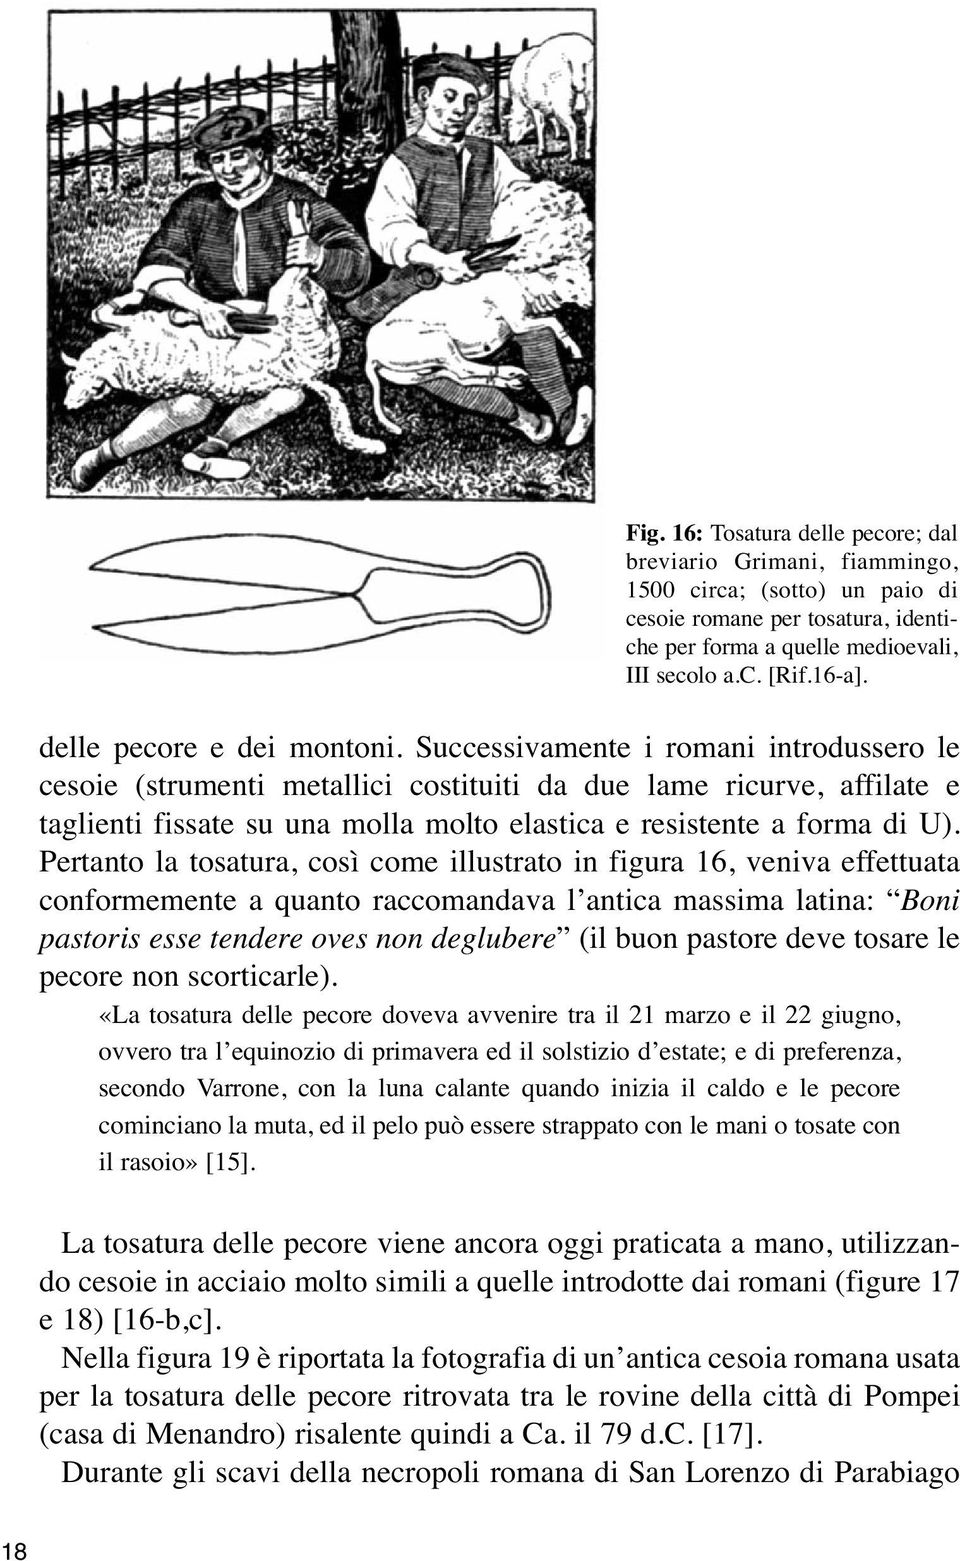 Successivamente i romani introdussero le cesoie (strumenti metallici costituiti da due lame ricurve, affilate e taglienti fissate su una molla molto elastica e resistente a forma di U).